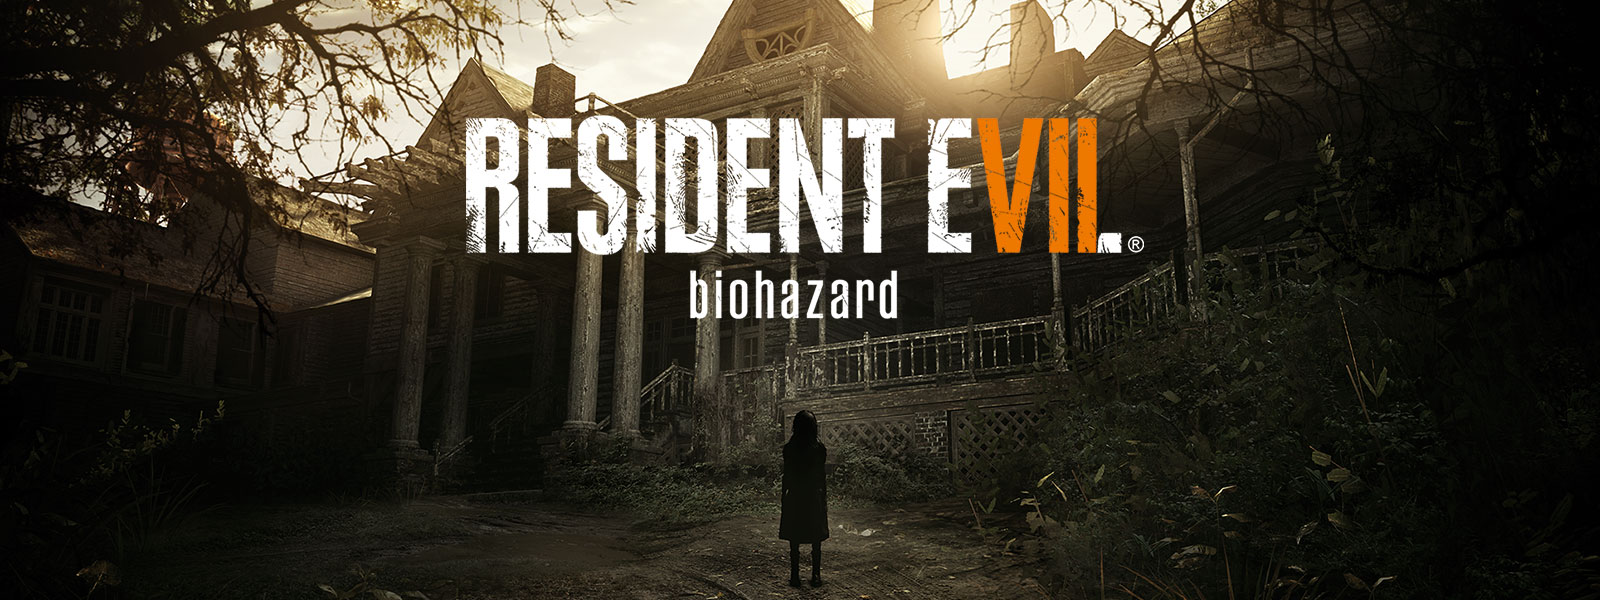 Hayaletli evin önünde duran tuhaf kız görüntüsünün üzerinde Resident Evil 7 biohazard gold edition kutu resmi